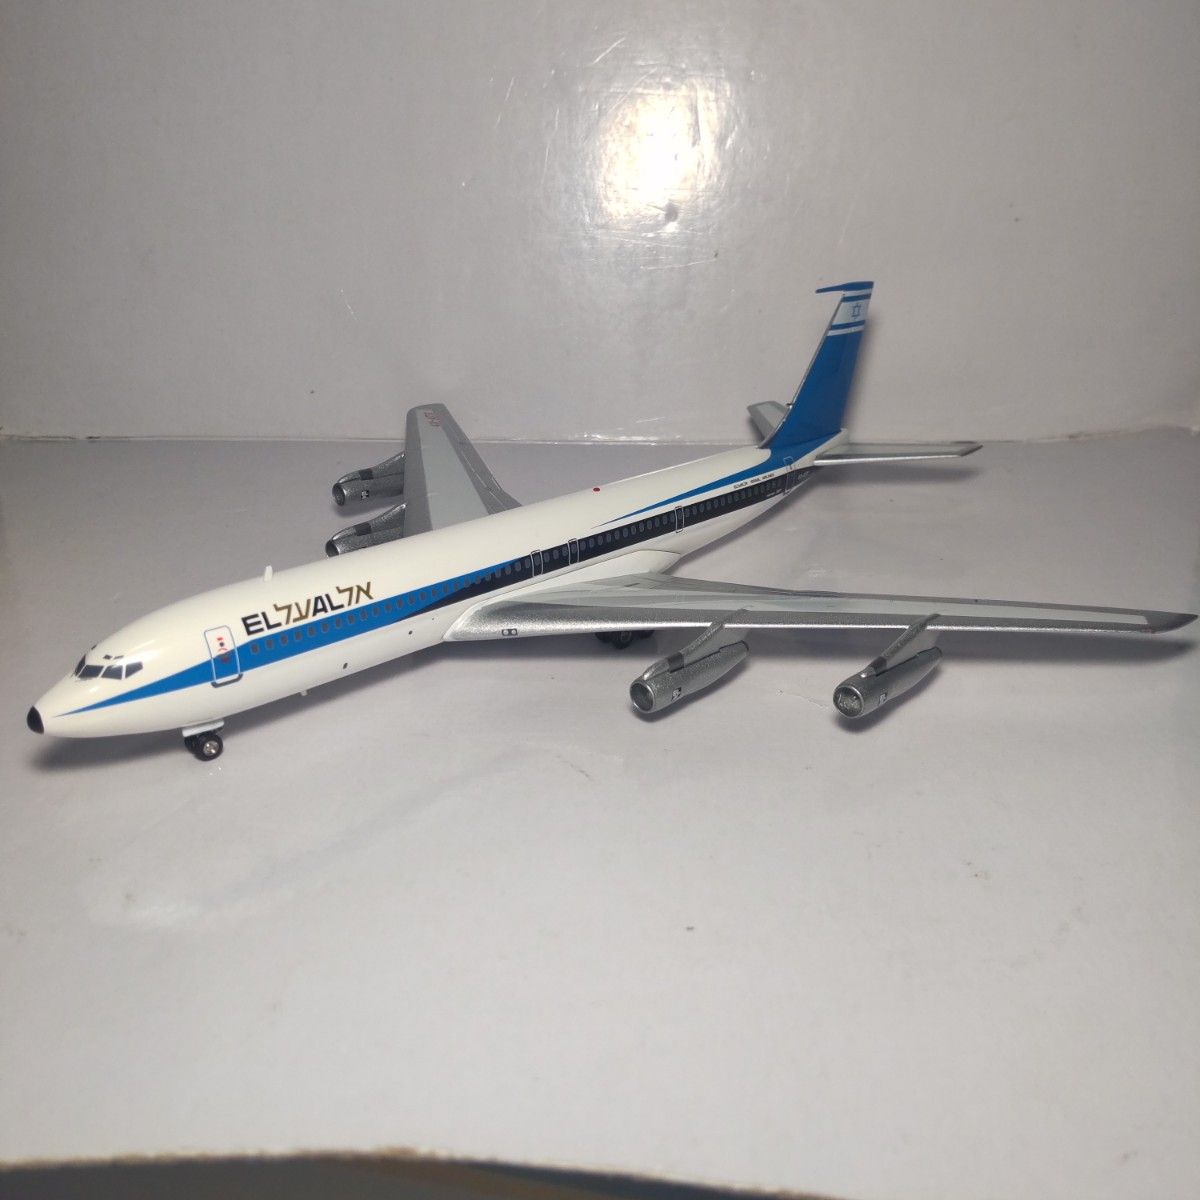 ボーイング707-358C エルアル航空 インフライト200 1/200